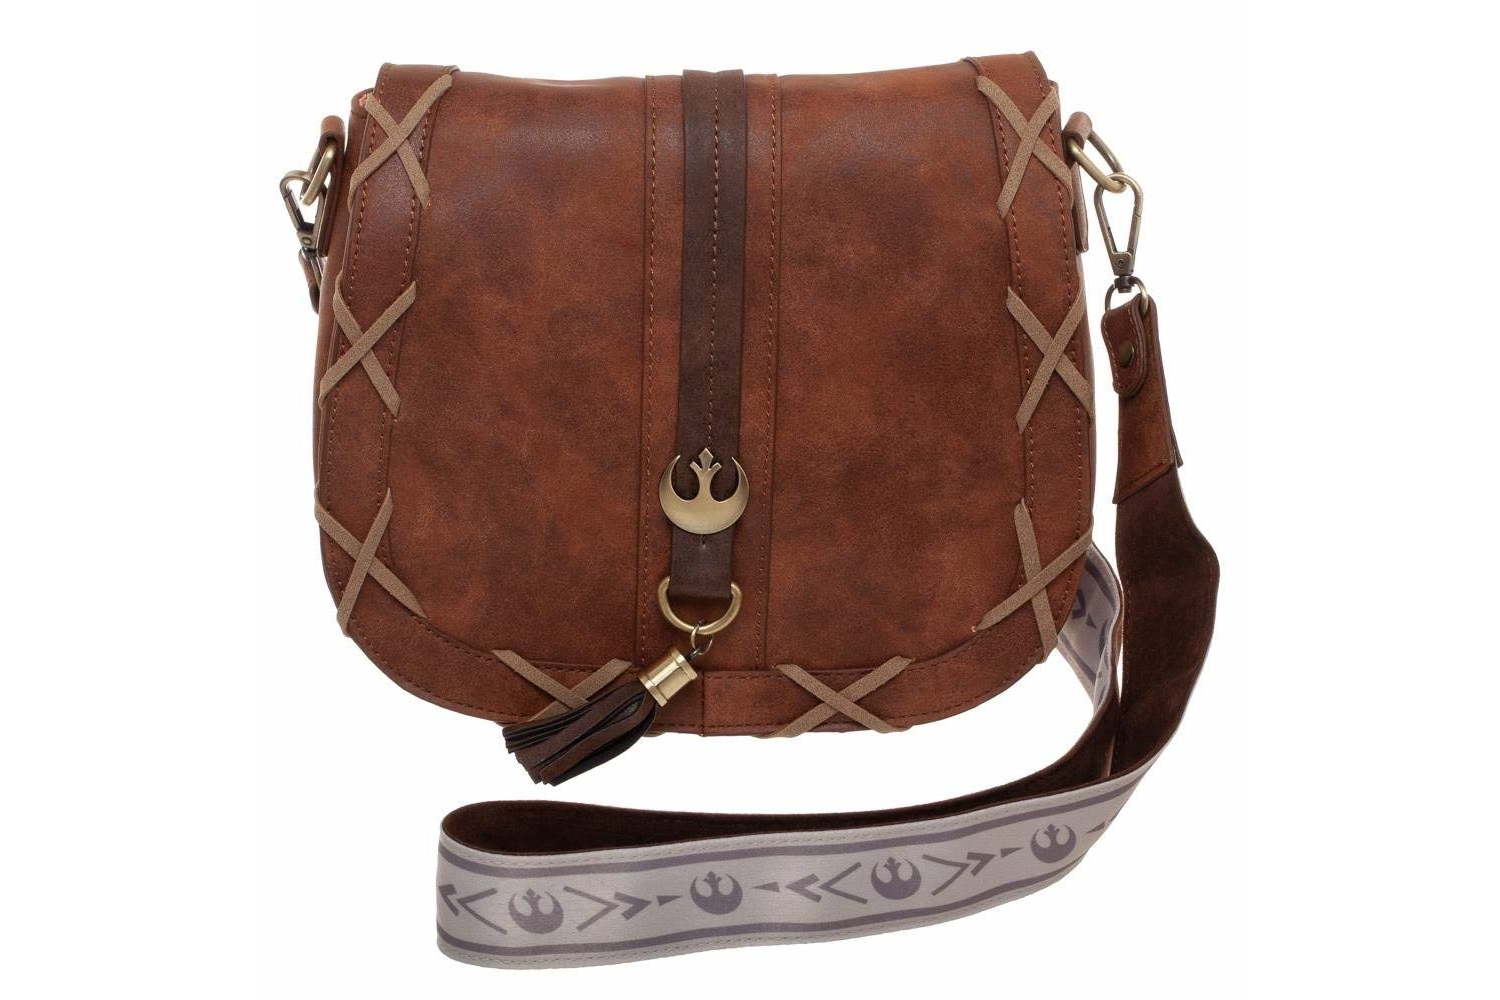 Bioworld x Star Wars Princess Leia Endor Saddlebag Purse Handbag at Amazon